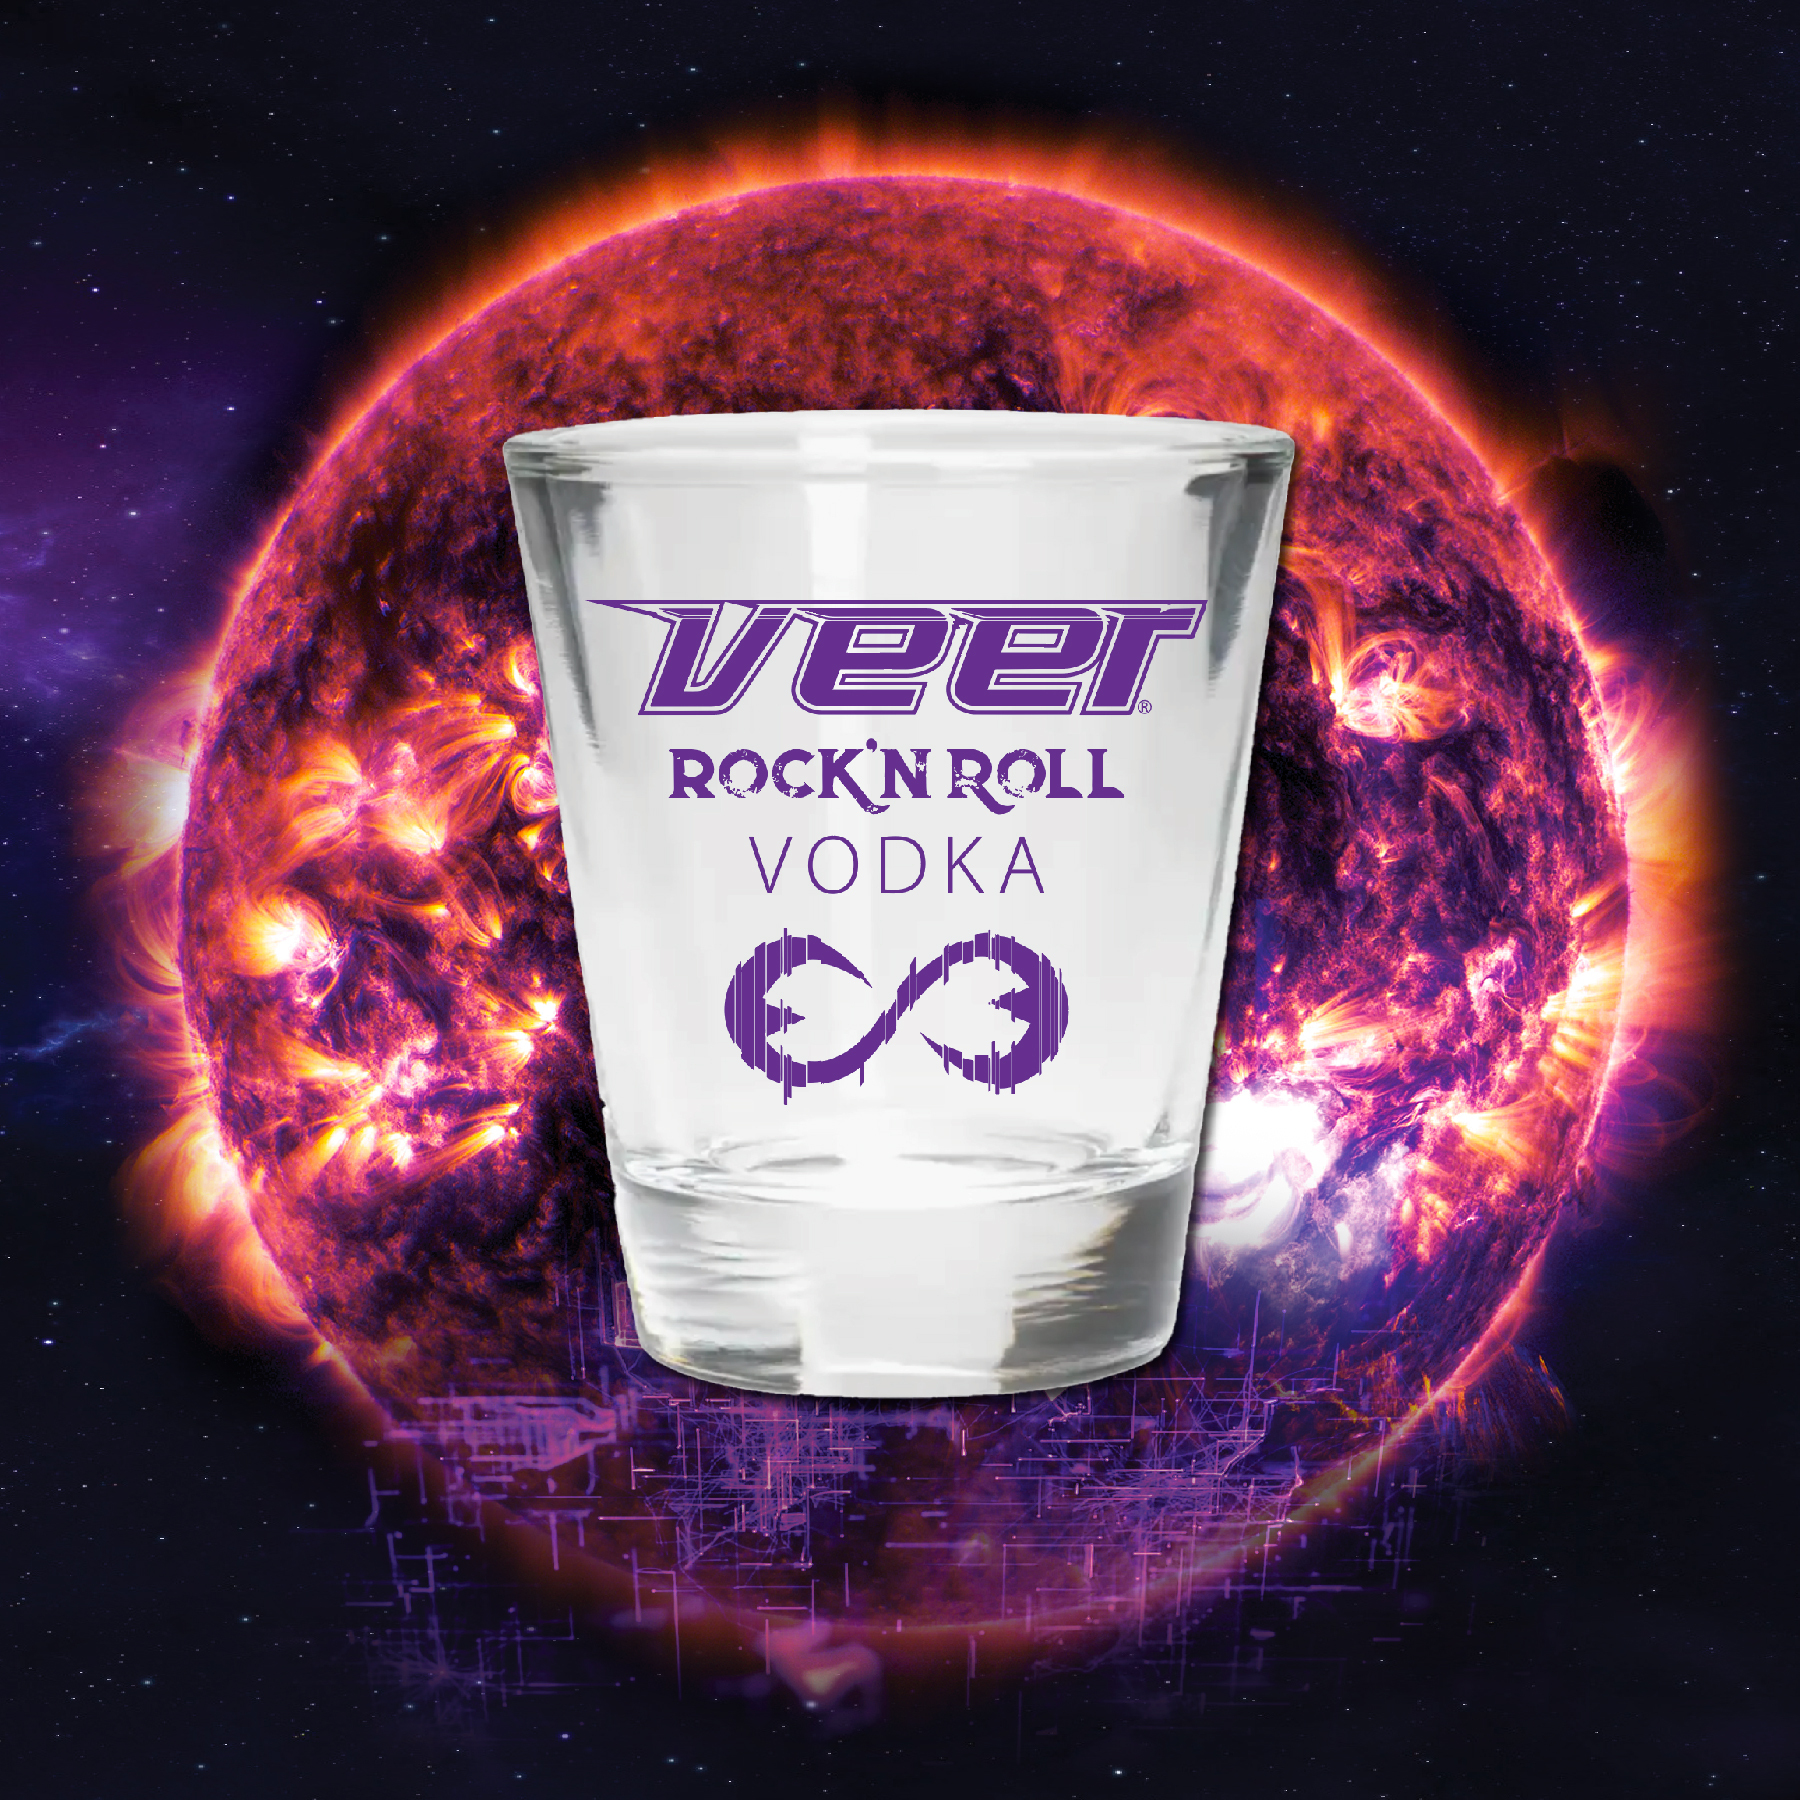 veer_vodka_shot_glass